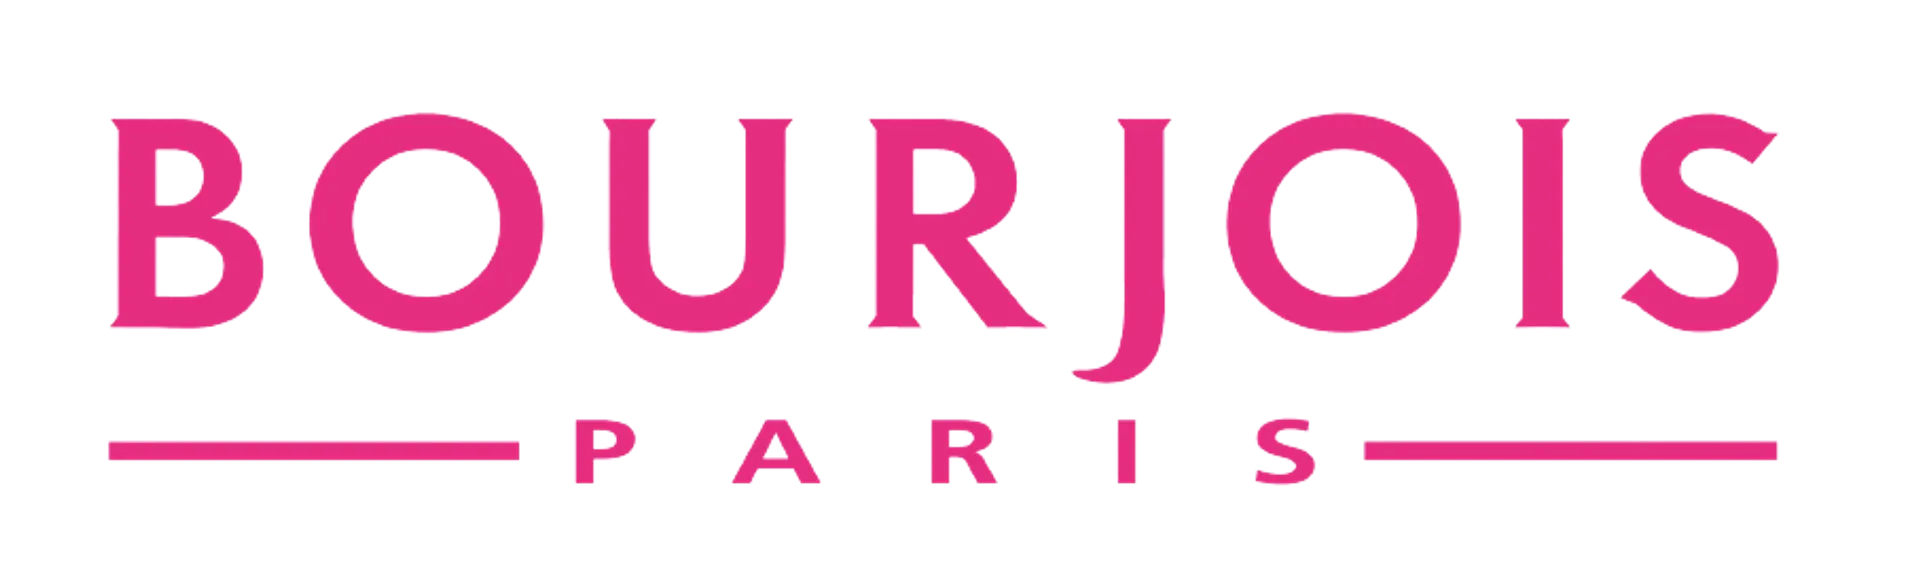 BOURJOIS logo de catálogo